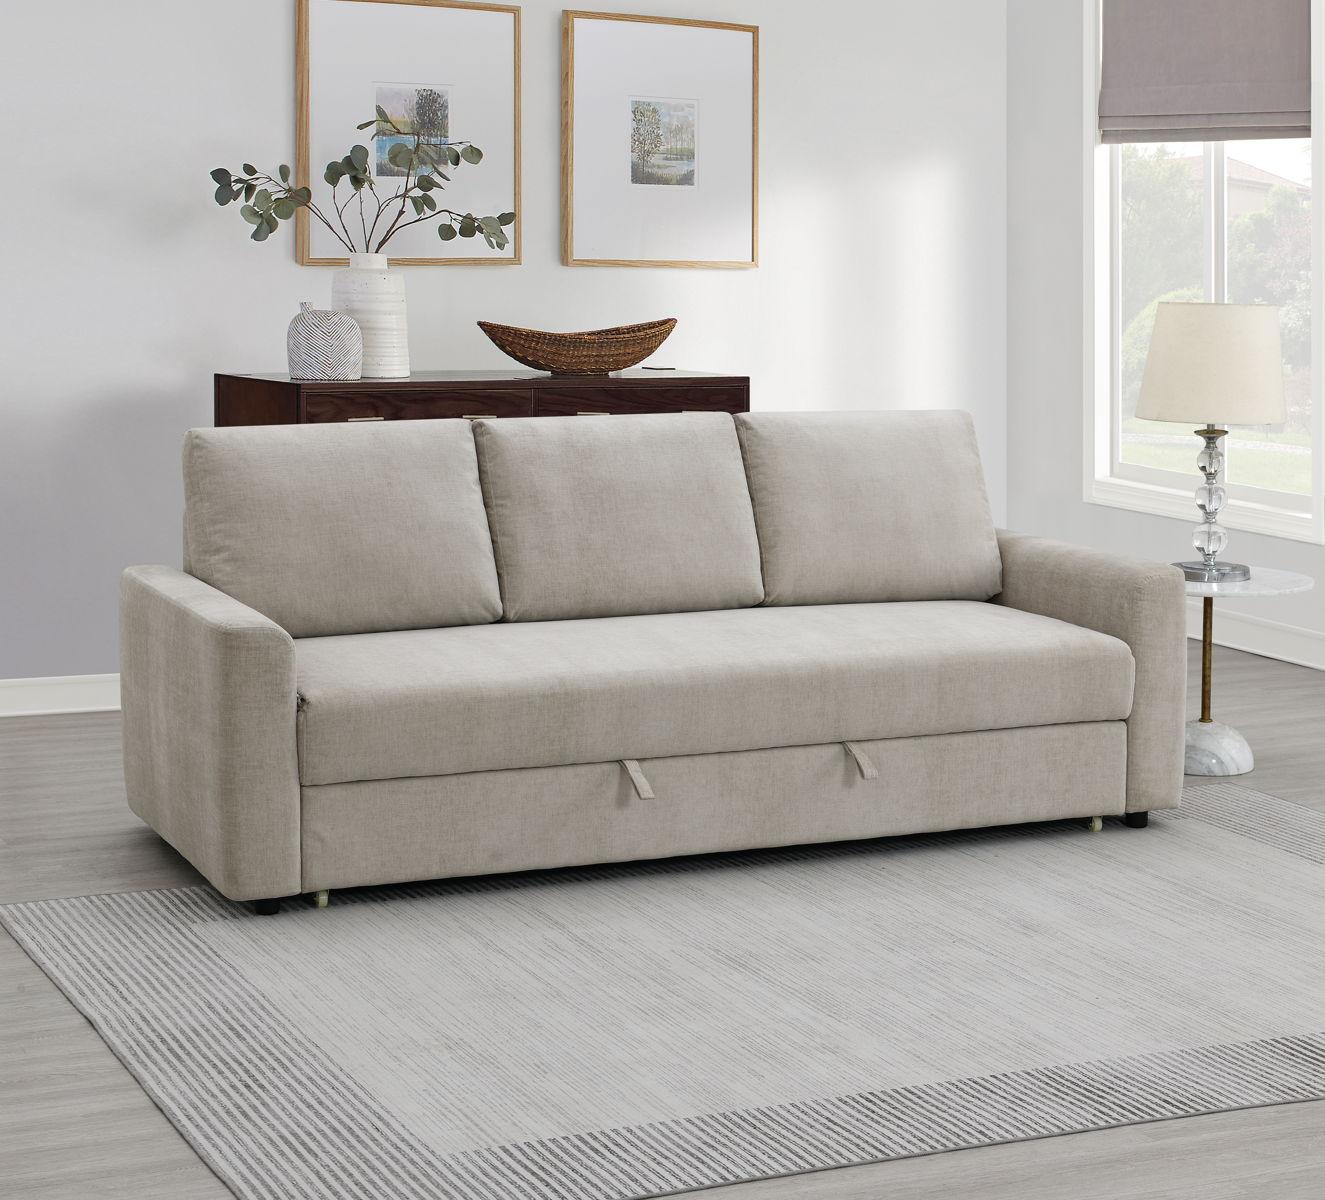 ACME - Haran - Sofa With Sleeper - Beige - 5th Avenue Furniture